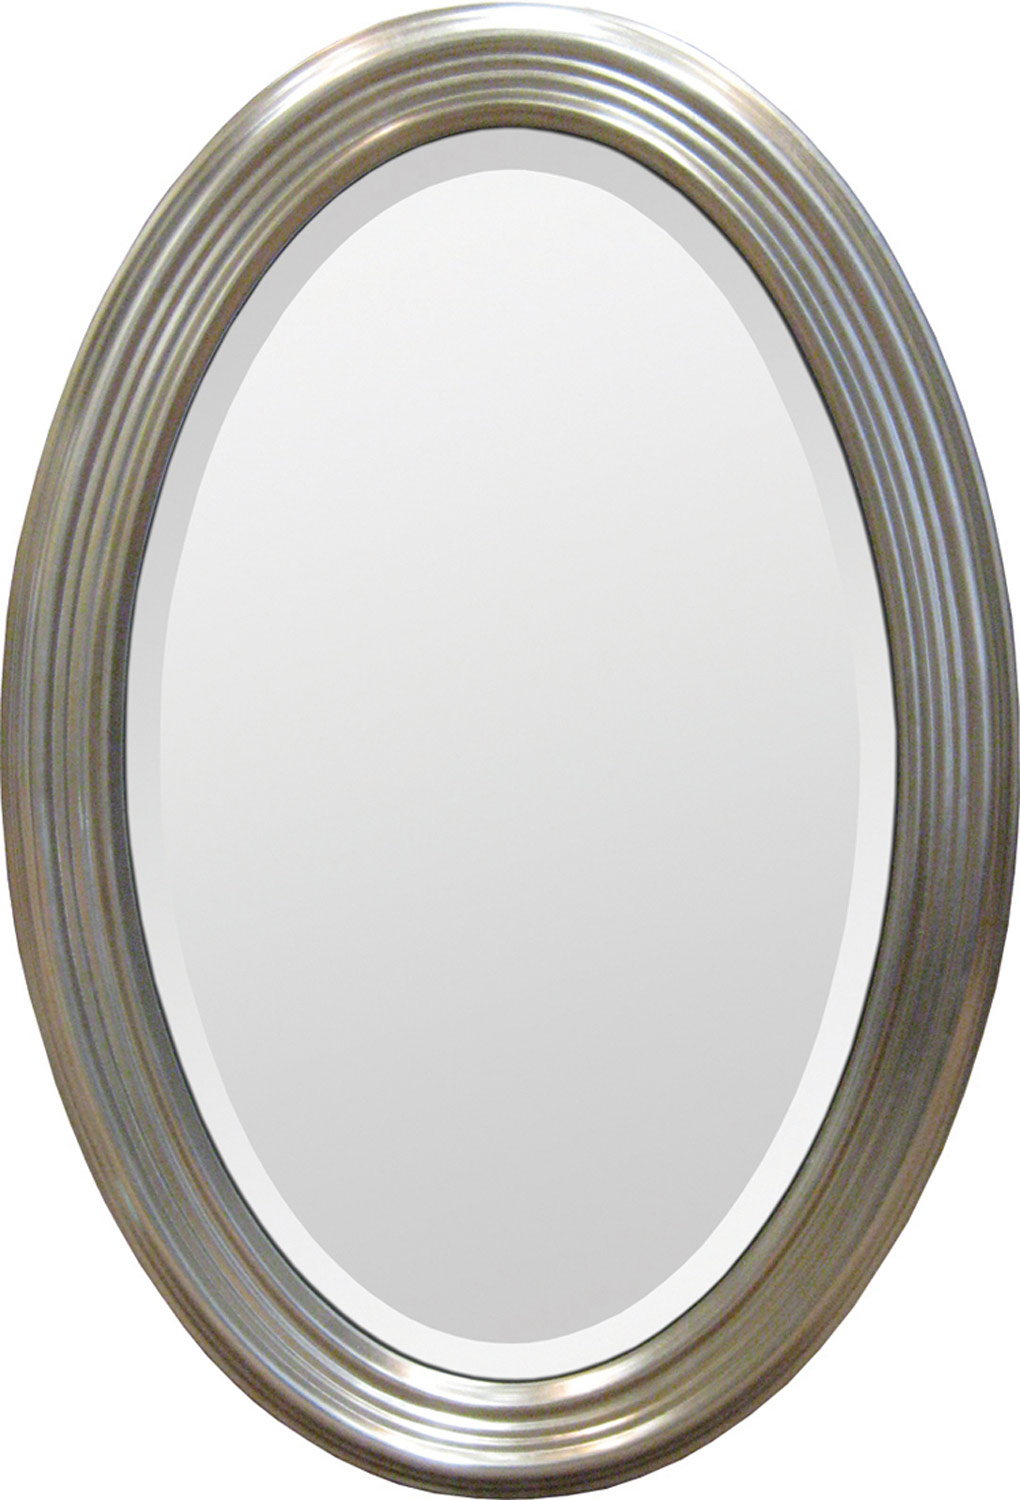 Ren-Wil Portrait Mirror - Silver